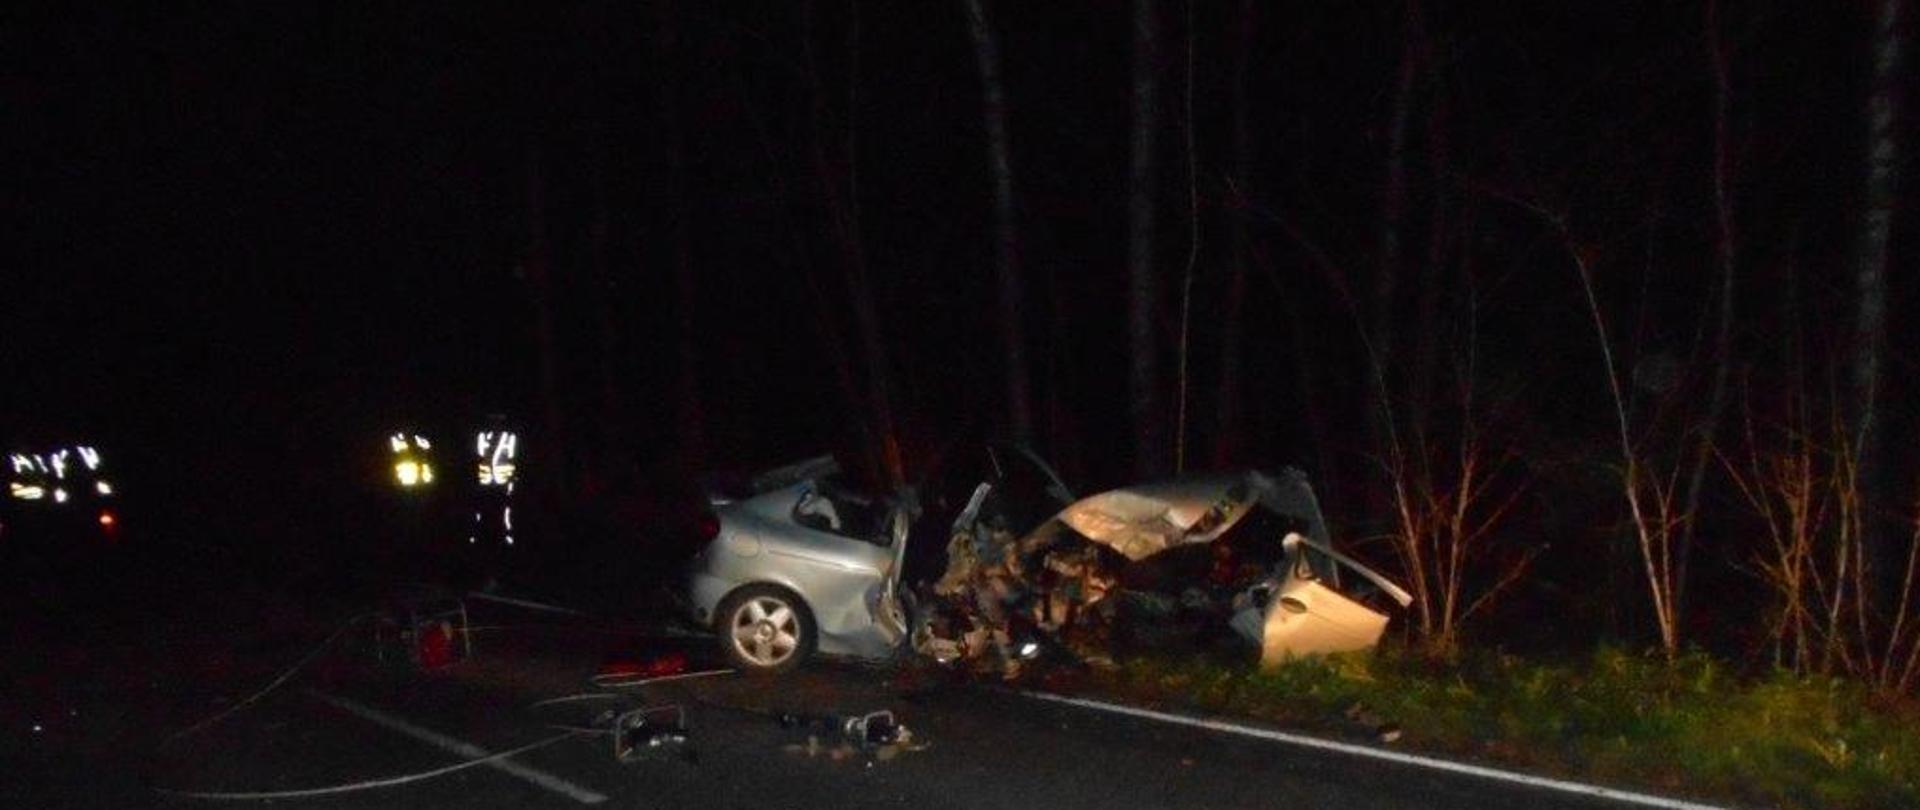 Zdjęcie przedstawia samochód Renault po uderzeniu w drzewo na poboczu drogi